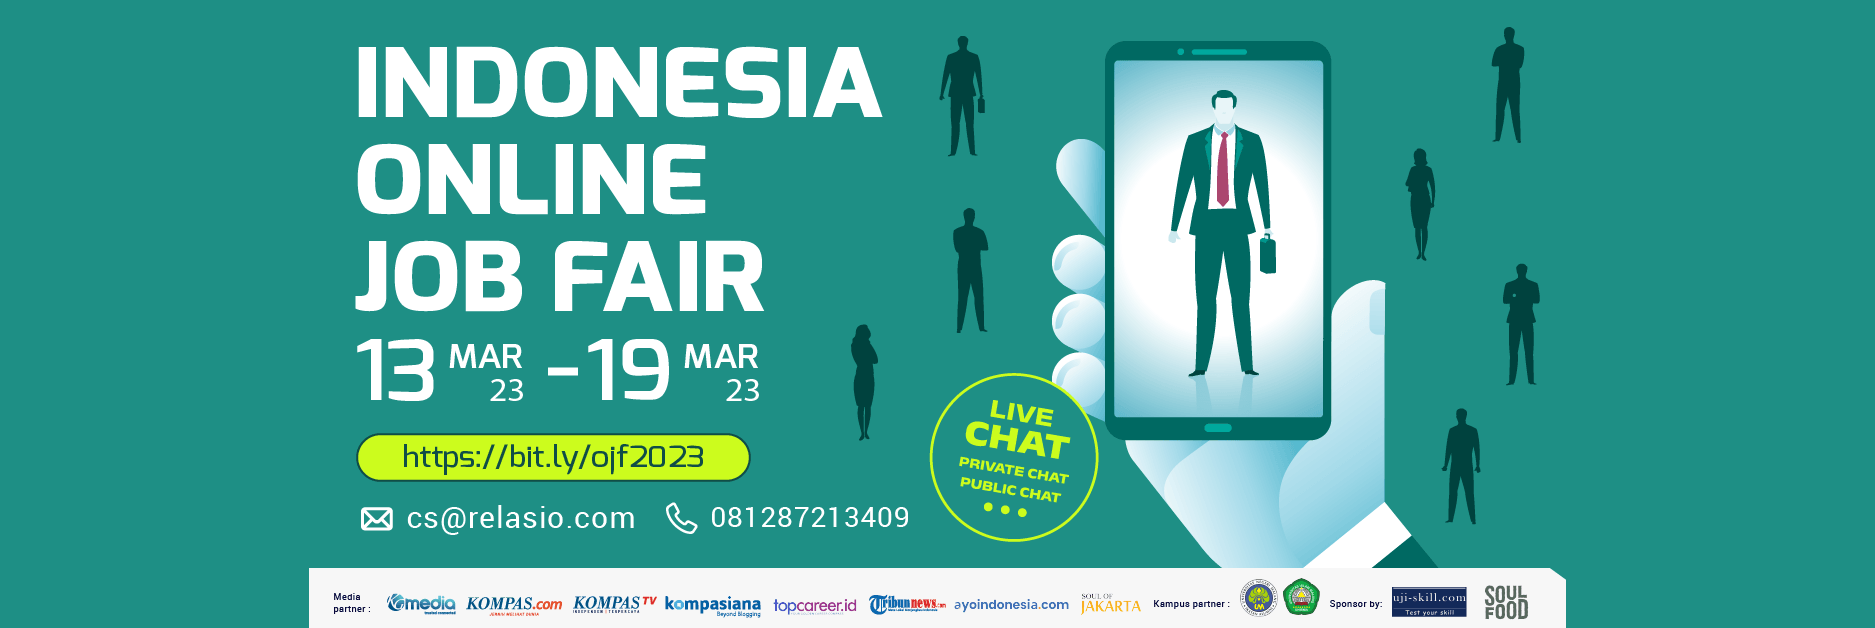 Indonesia Career Expo Job Fair Online 13 Maret - 19 Maret 2023